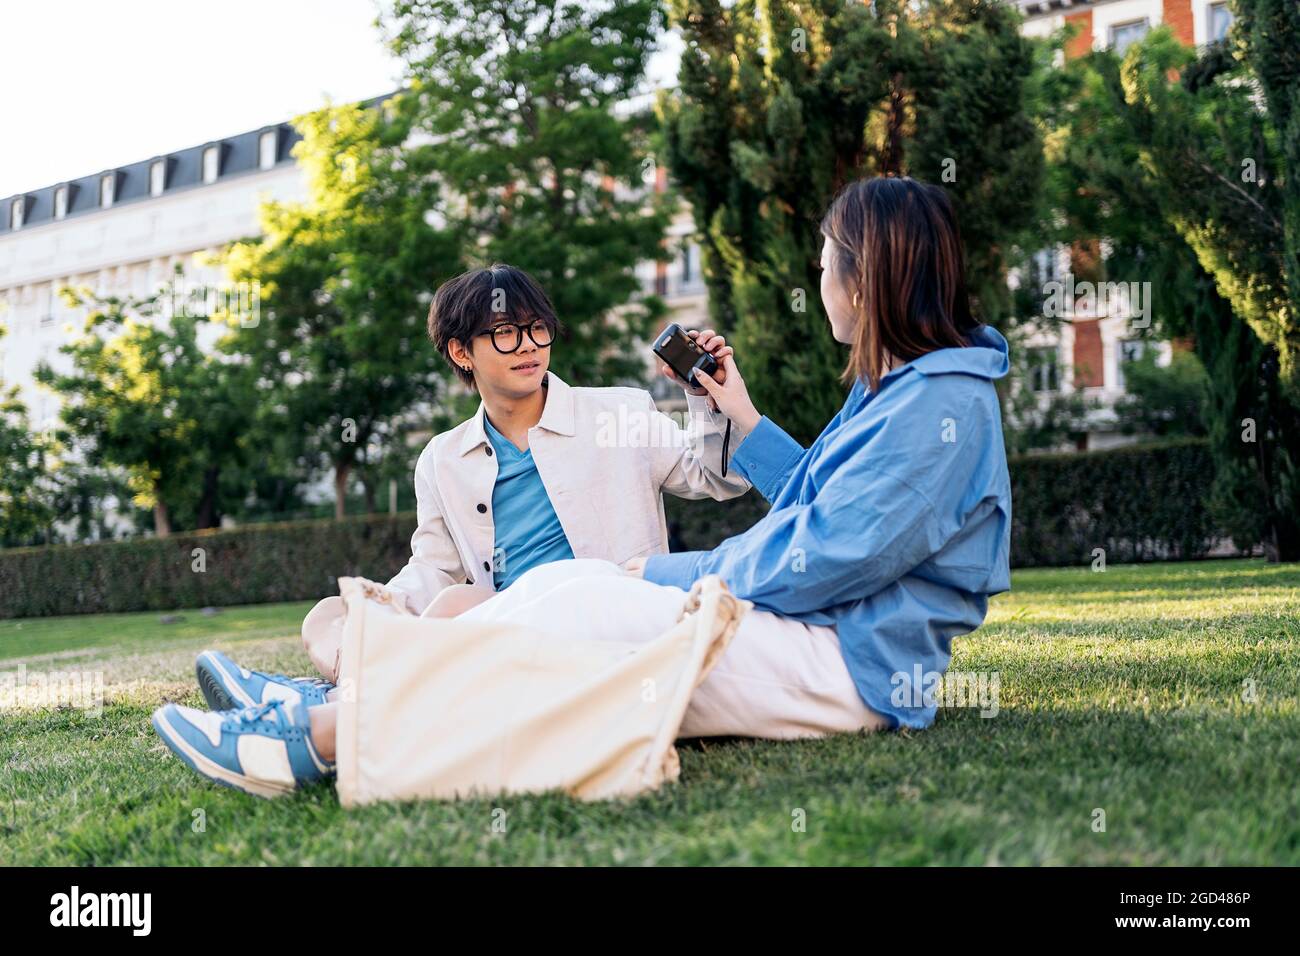 Unbekannte Frau, die im Park Fotos mit ihrem asiatischen Freund macht. Stockfoto